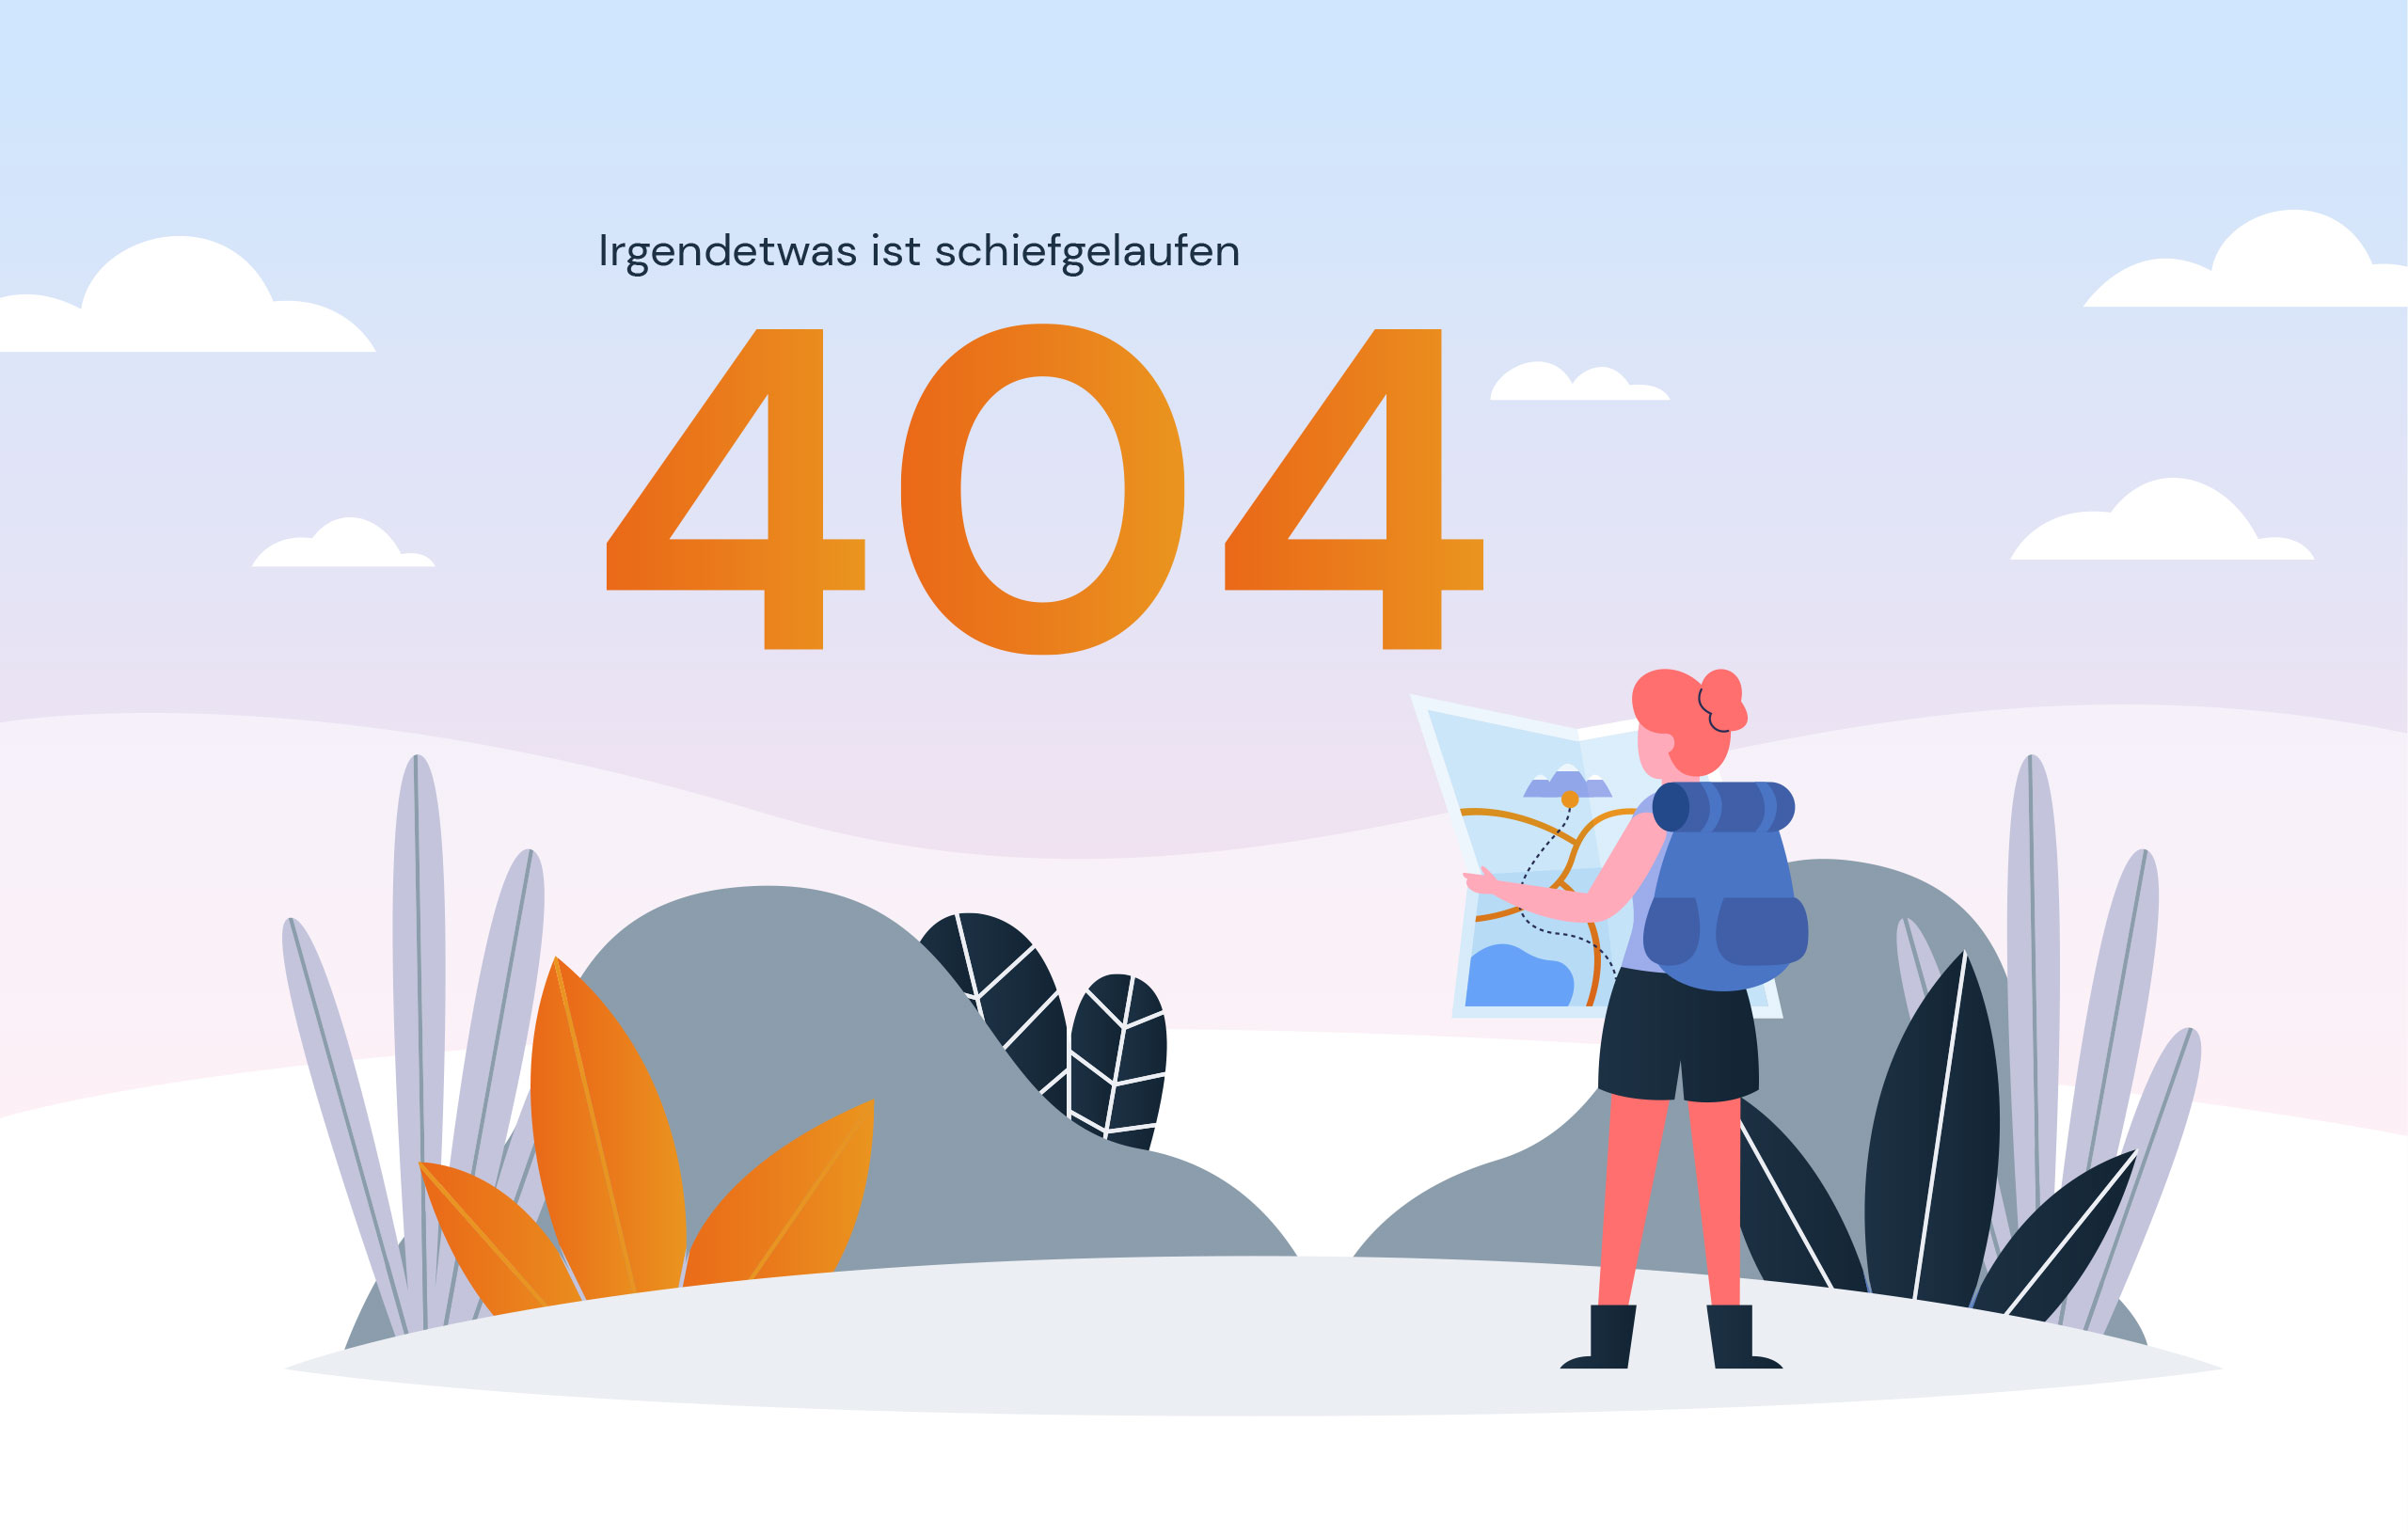 Irgendetwas ist schiefgelaufen - Error 404